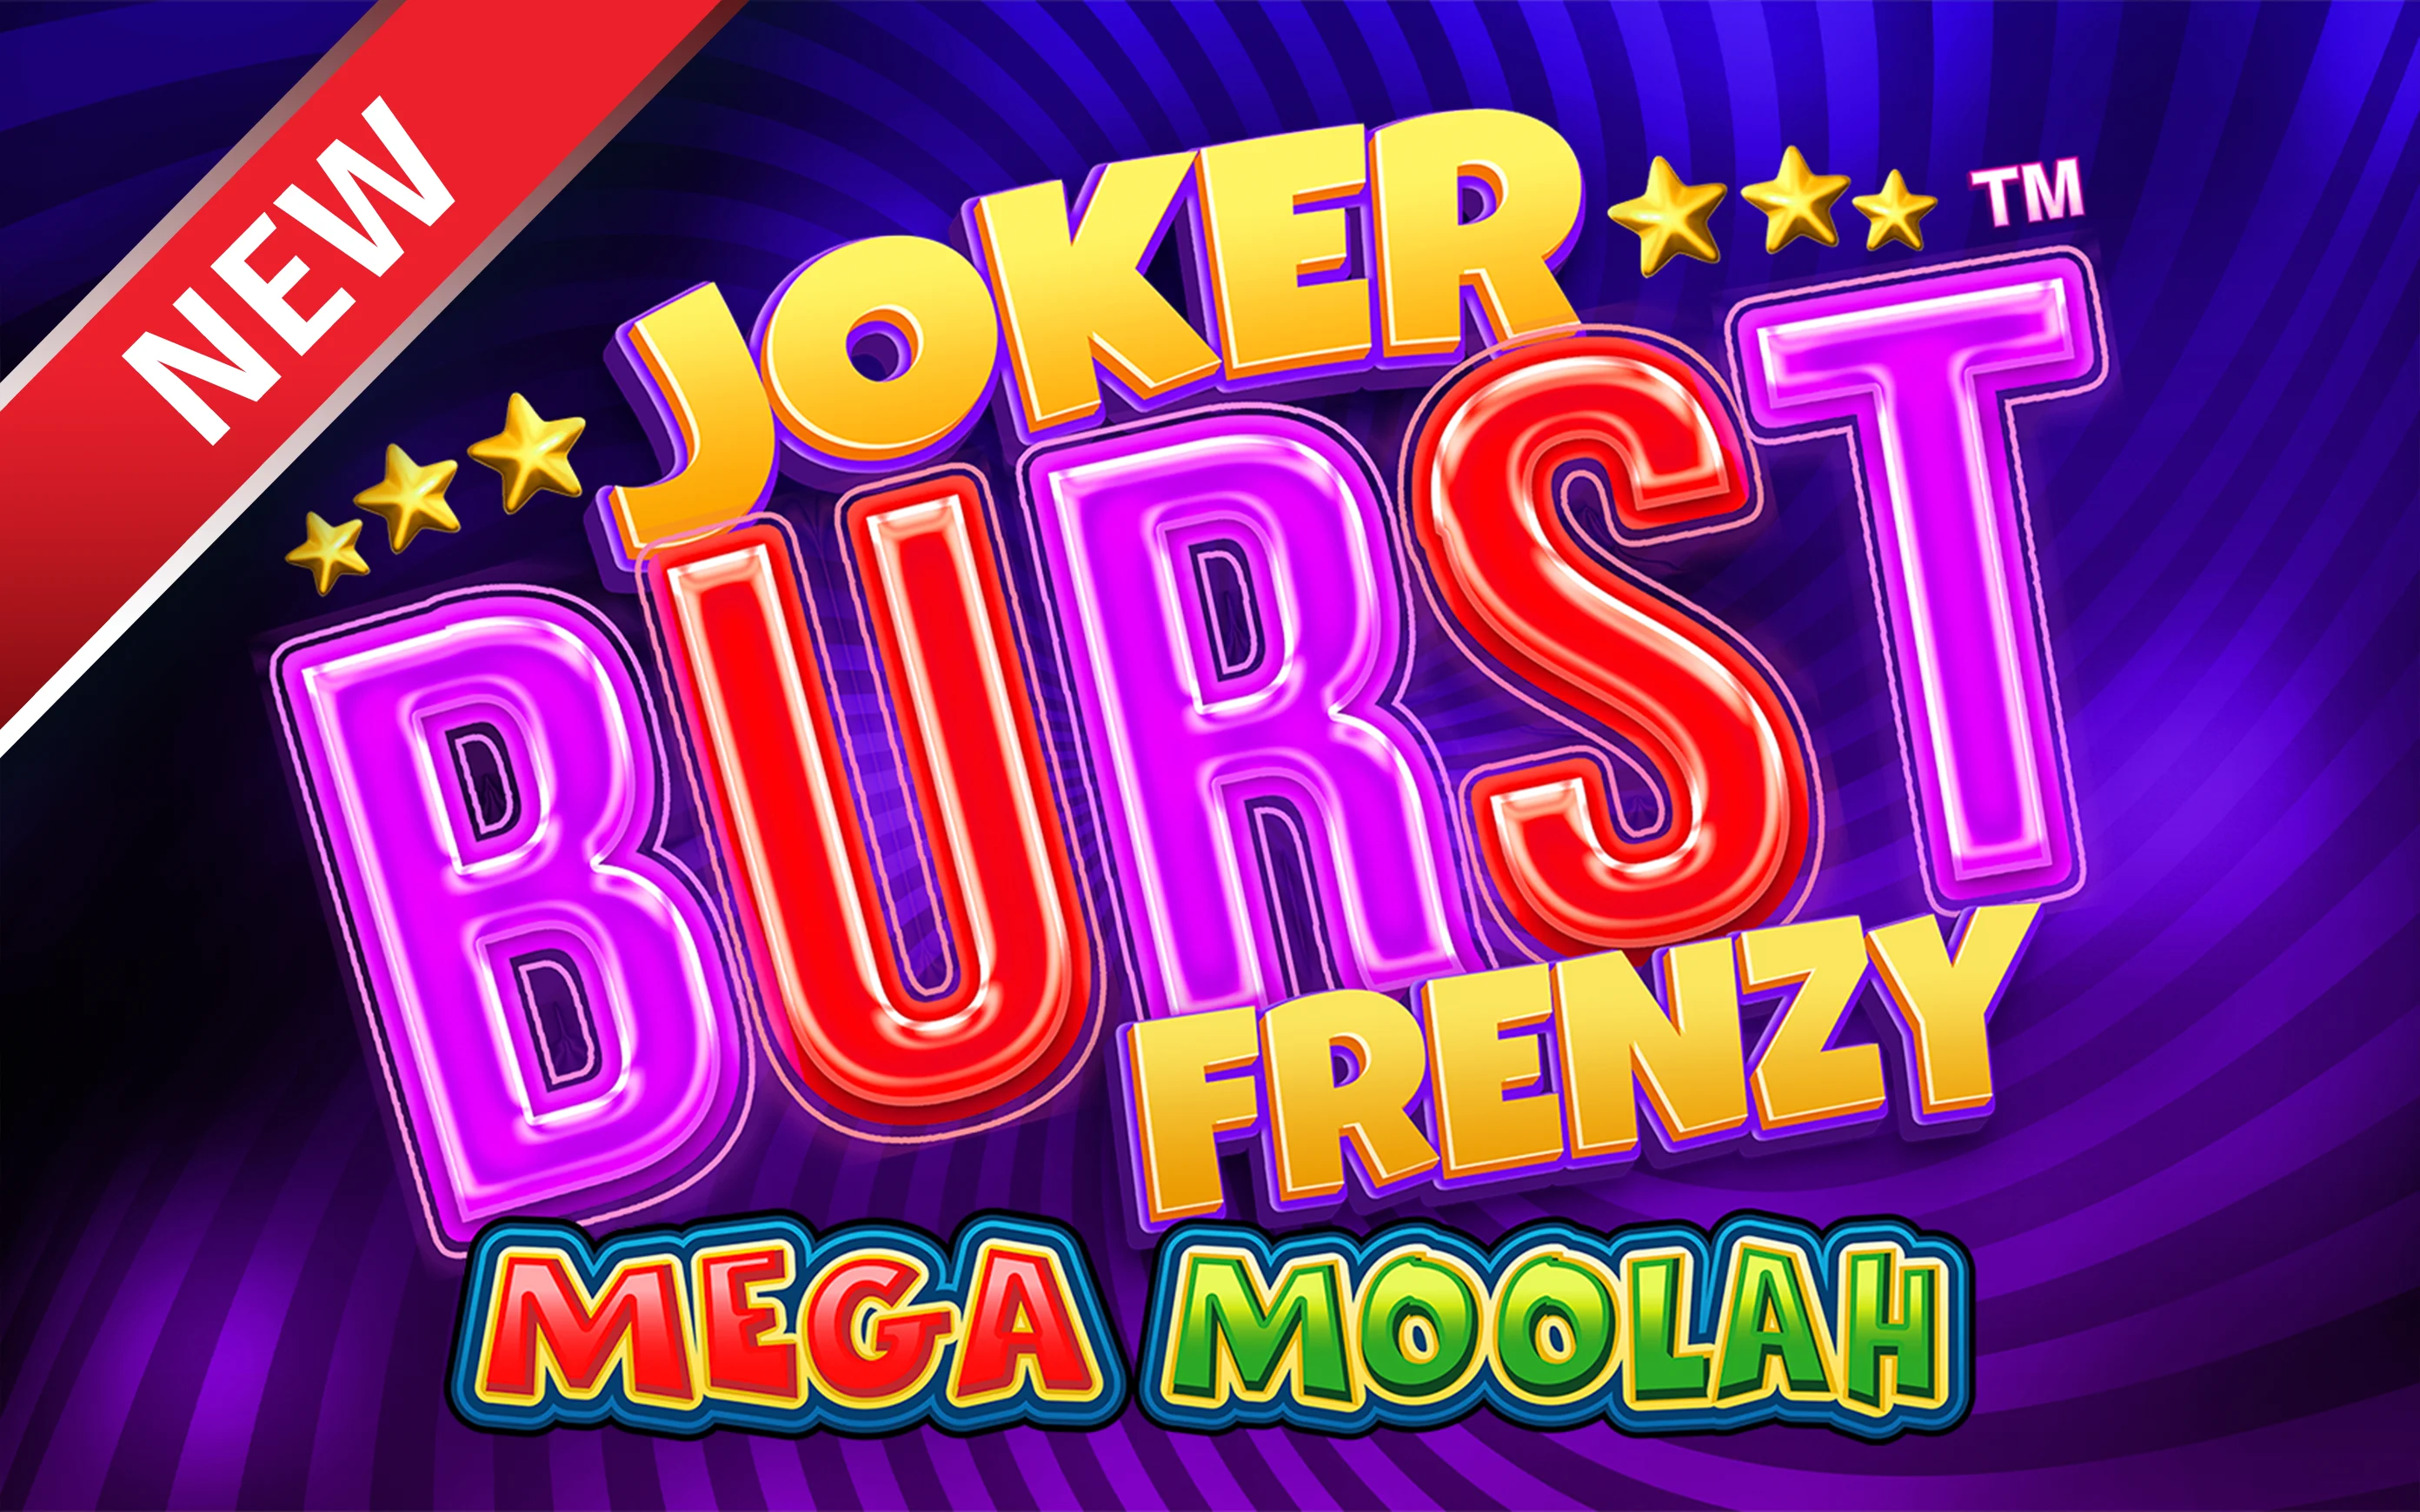 Joacă Joker Burst Frenzy Mega Moolah în cazinoul online Starcasino.be